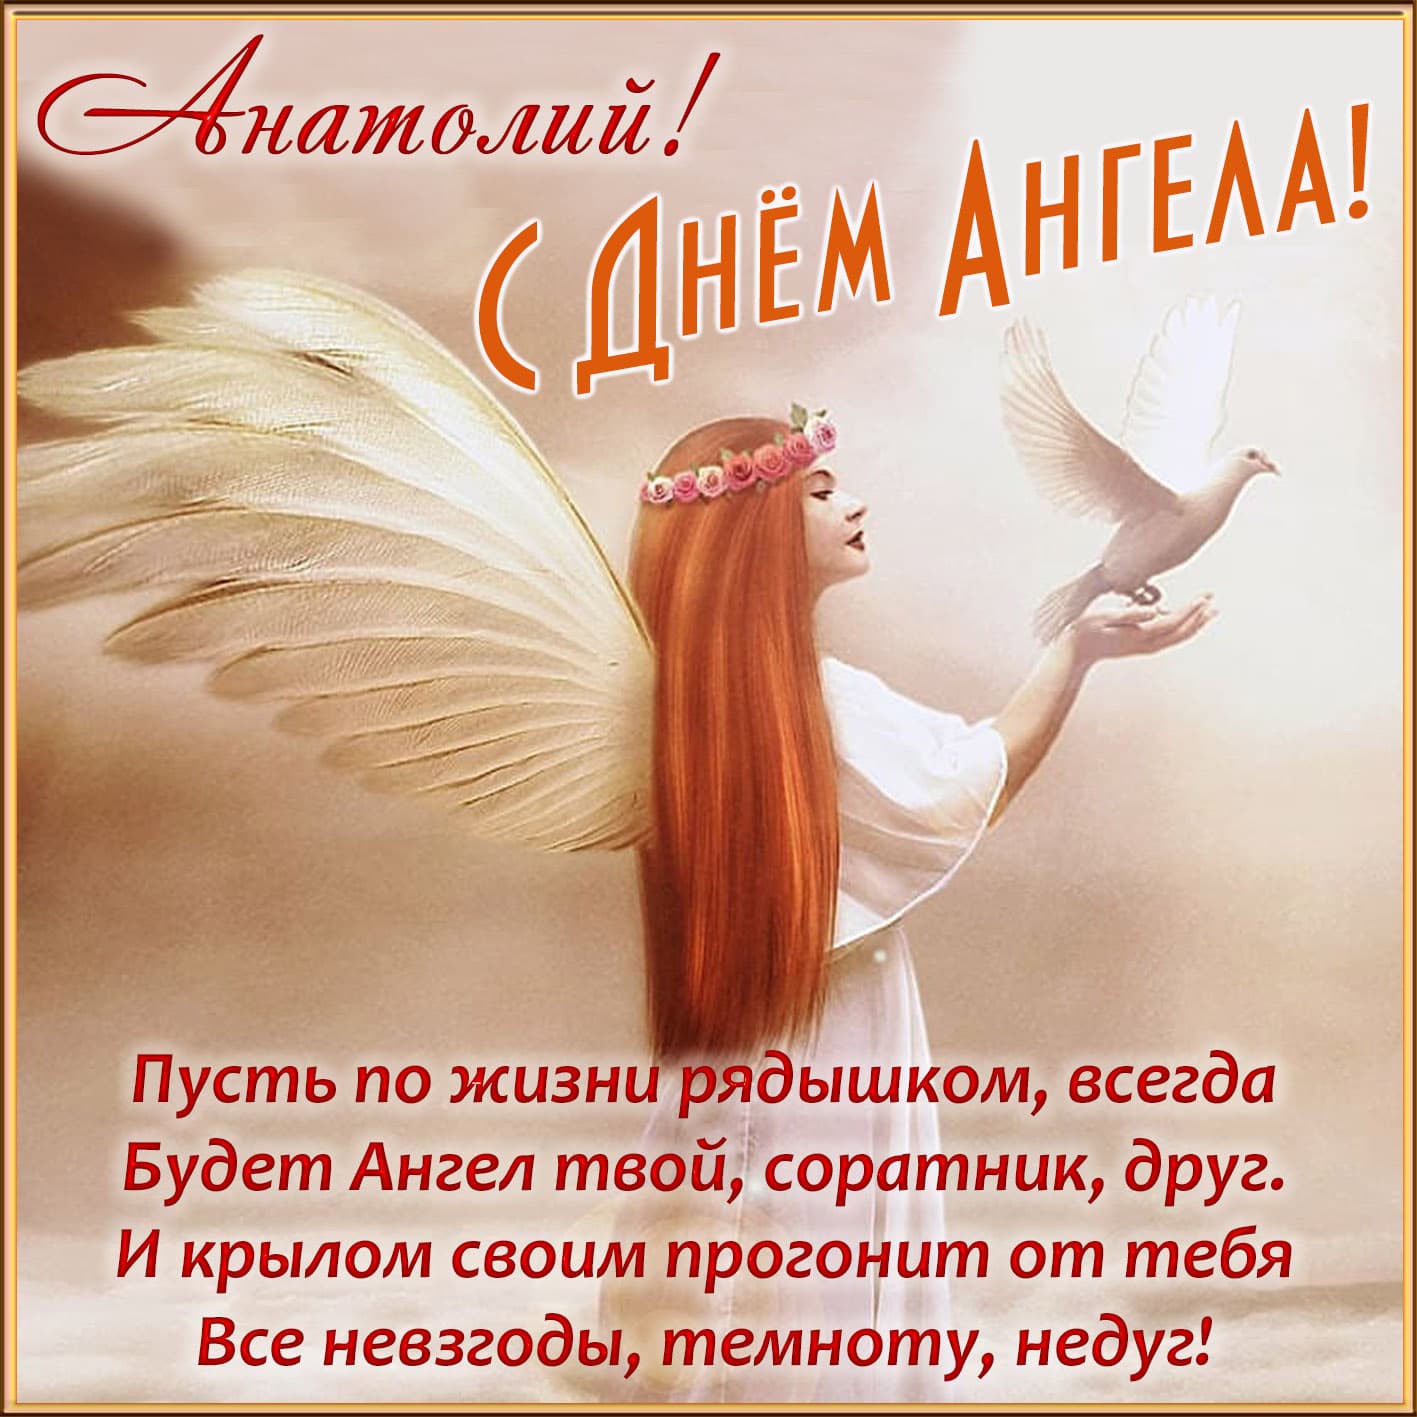 Нежная поздравительная открытка для анатолия в день ангела